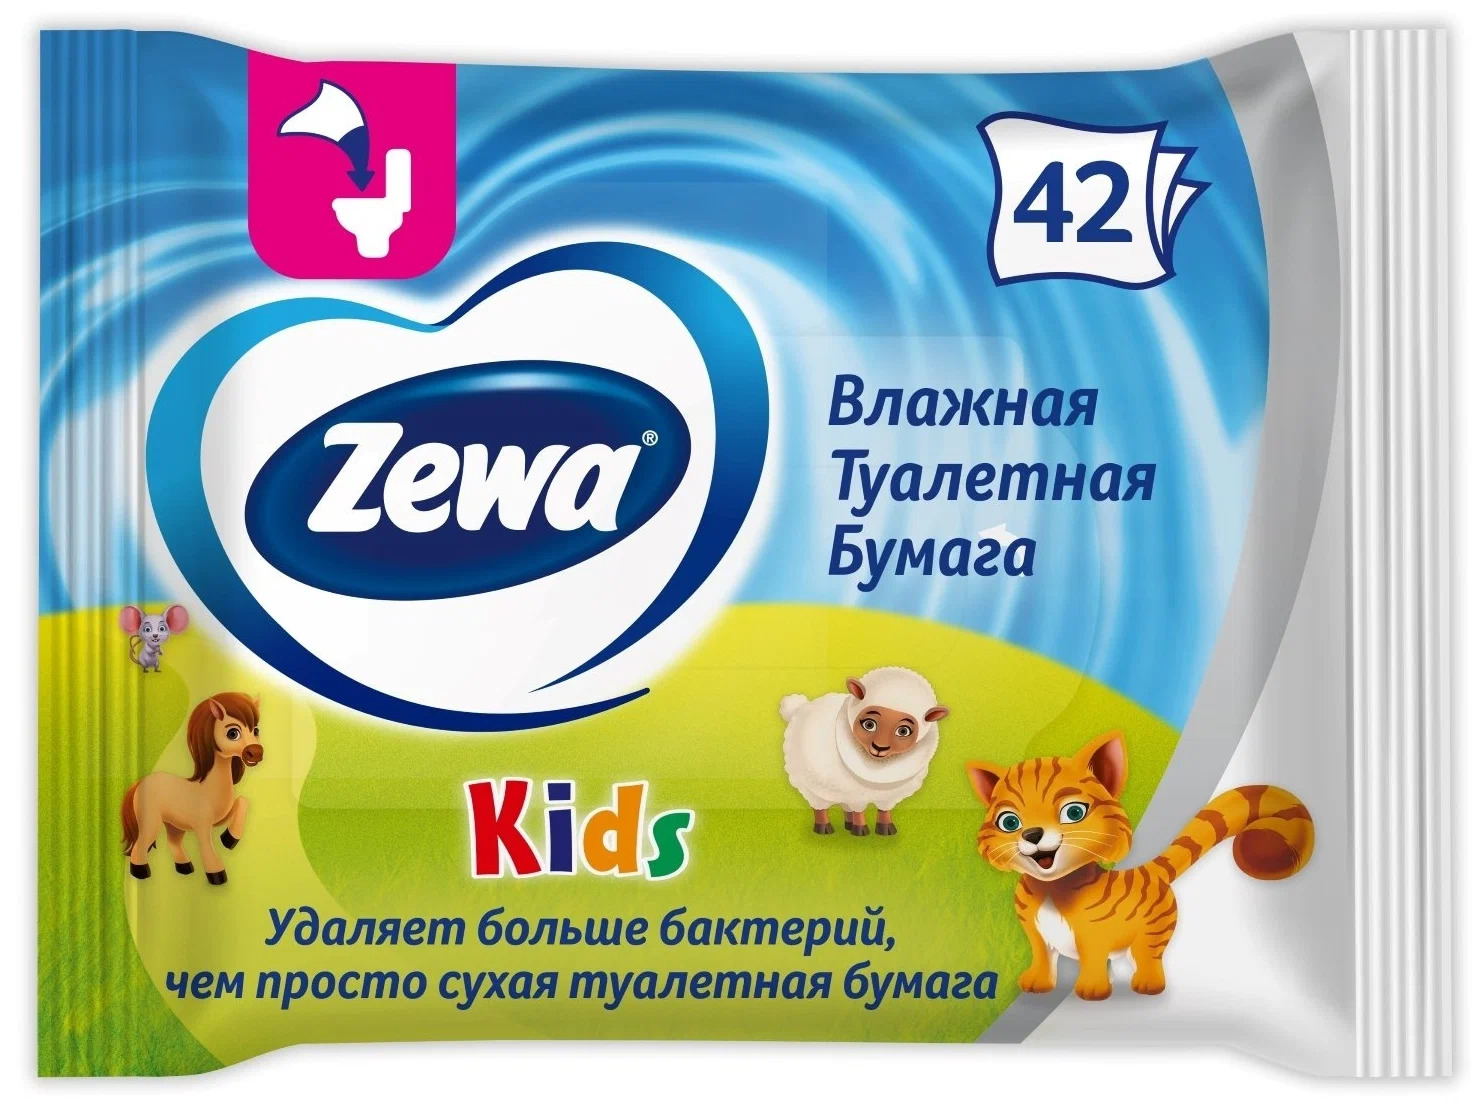 Бумага туалетная влажная Zewa Kids, 42 шт. бумага туалетная влажная zewa kids 42 шт